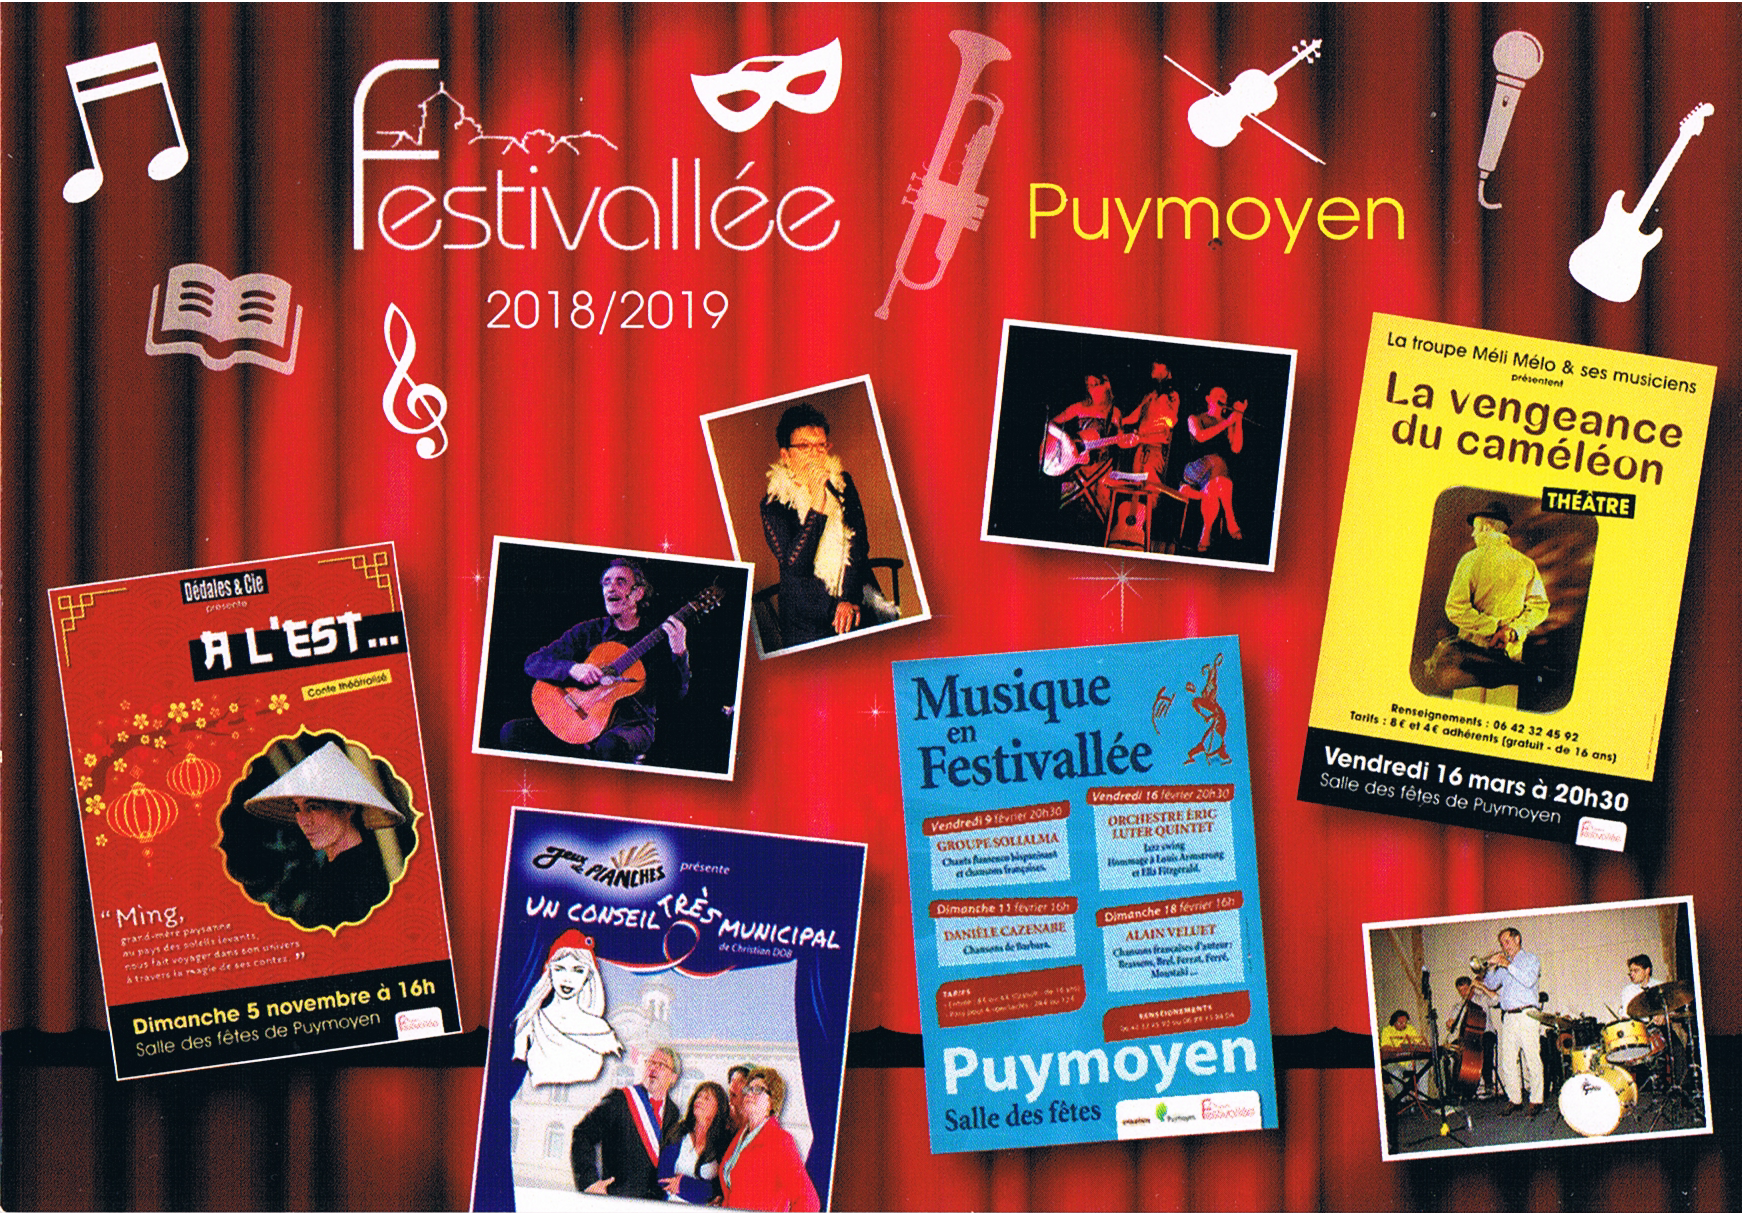 Festivallée - Programme 2018-2019